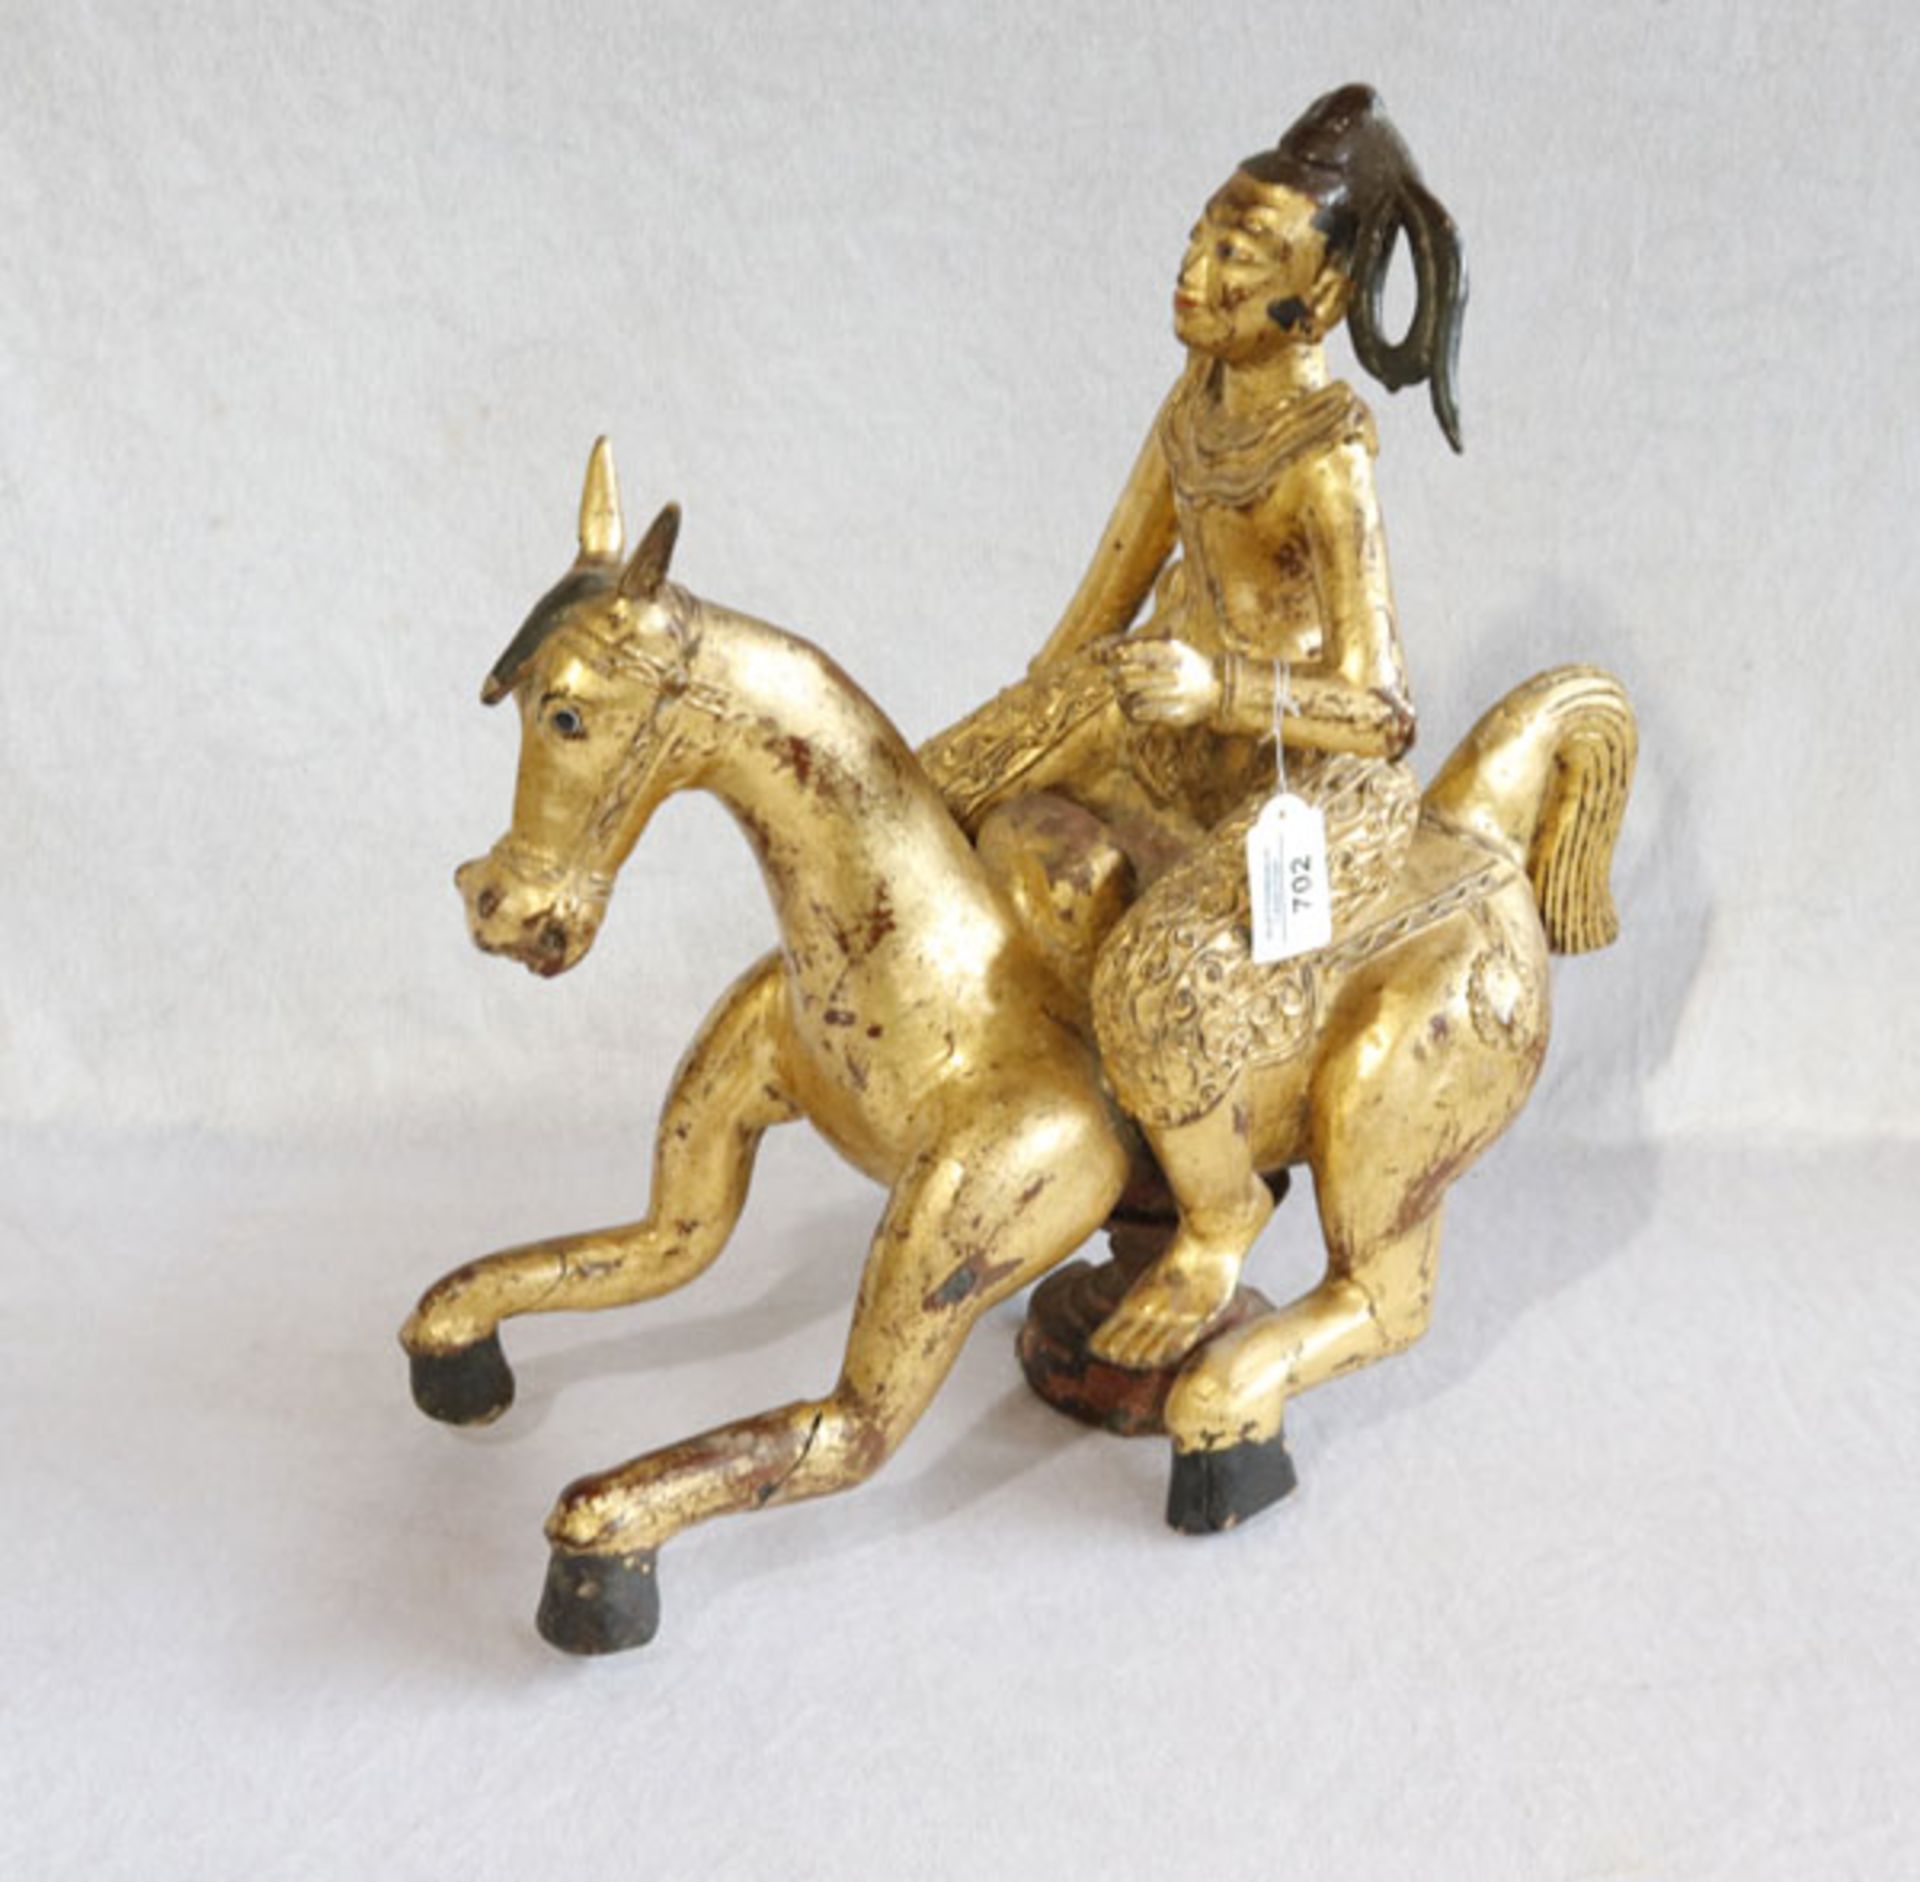 Holz Figurenskulptur 'Chinesische Reiterfigur', gold/schwarz gefaßt, H 45 cm, T 46 cm, B 23 cm,